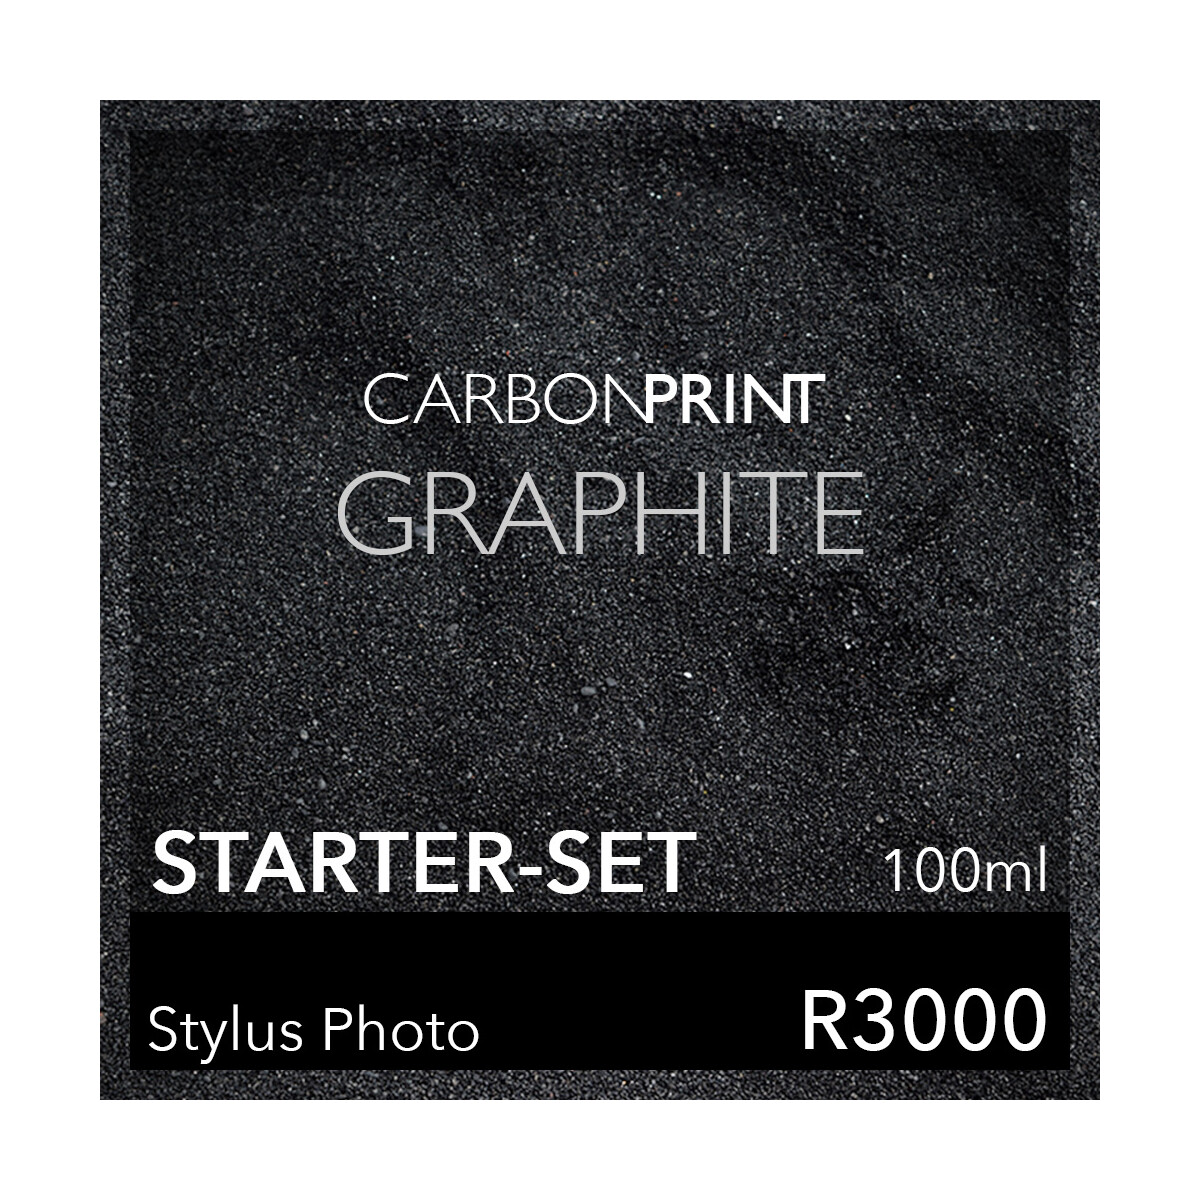 Starter-Set Carbonprint Graphite für Photo R3000...